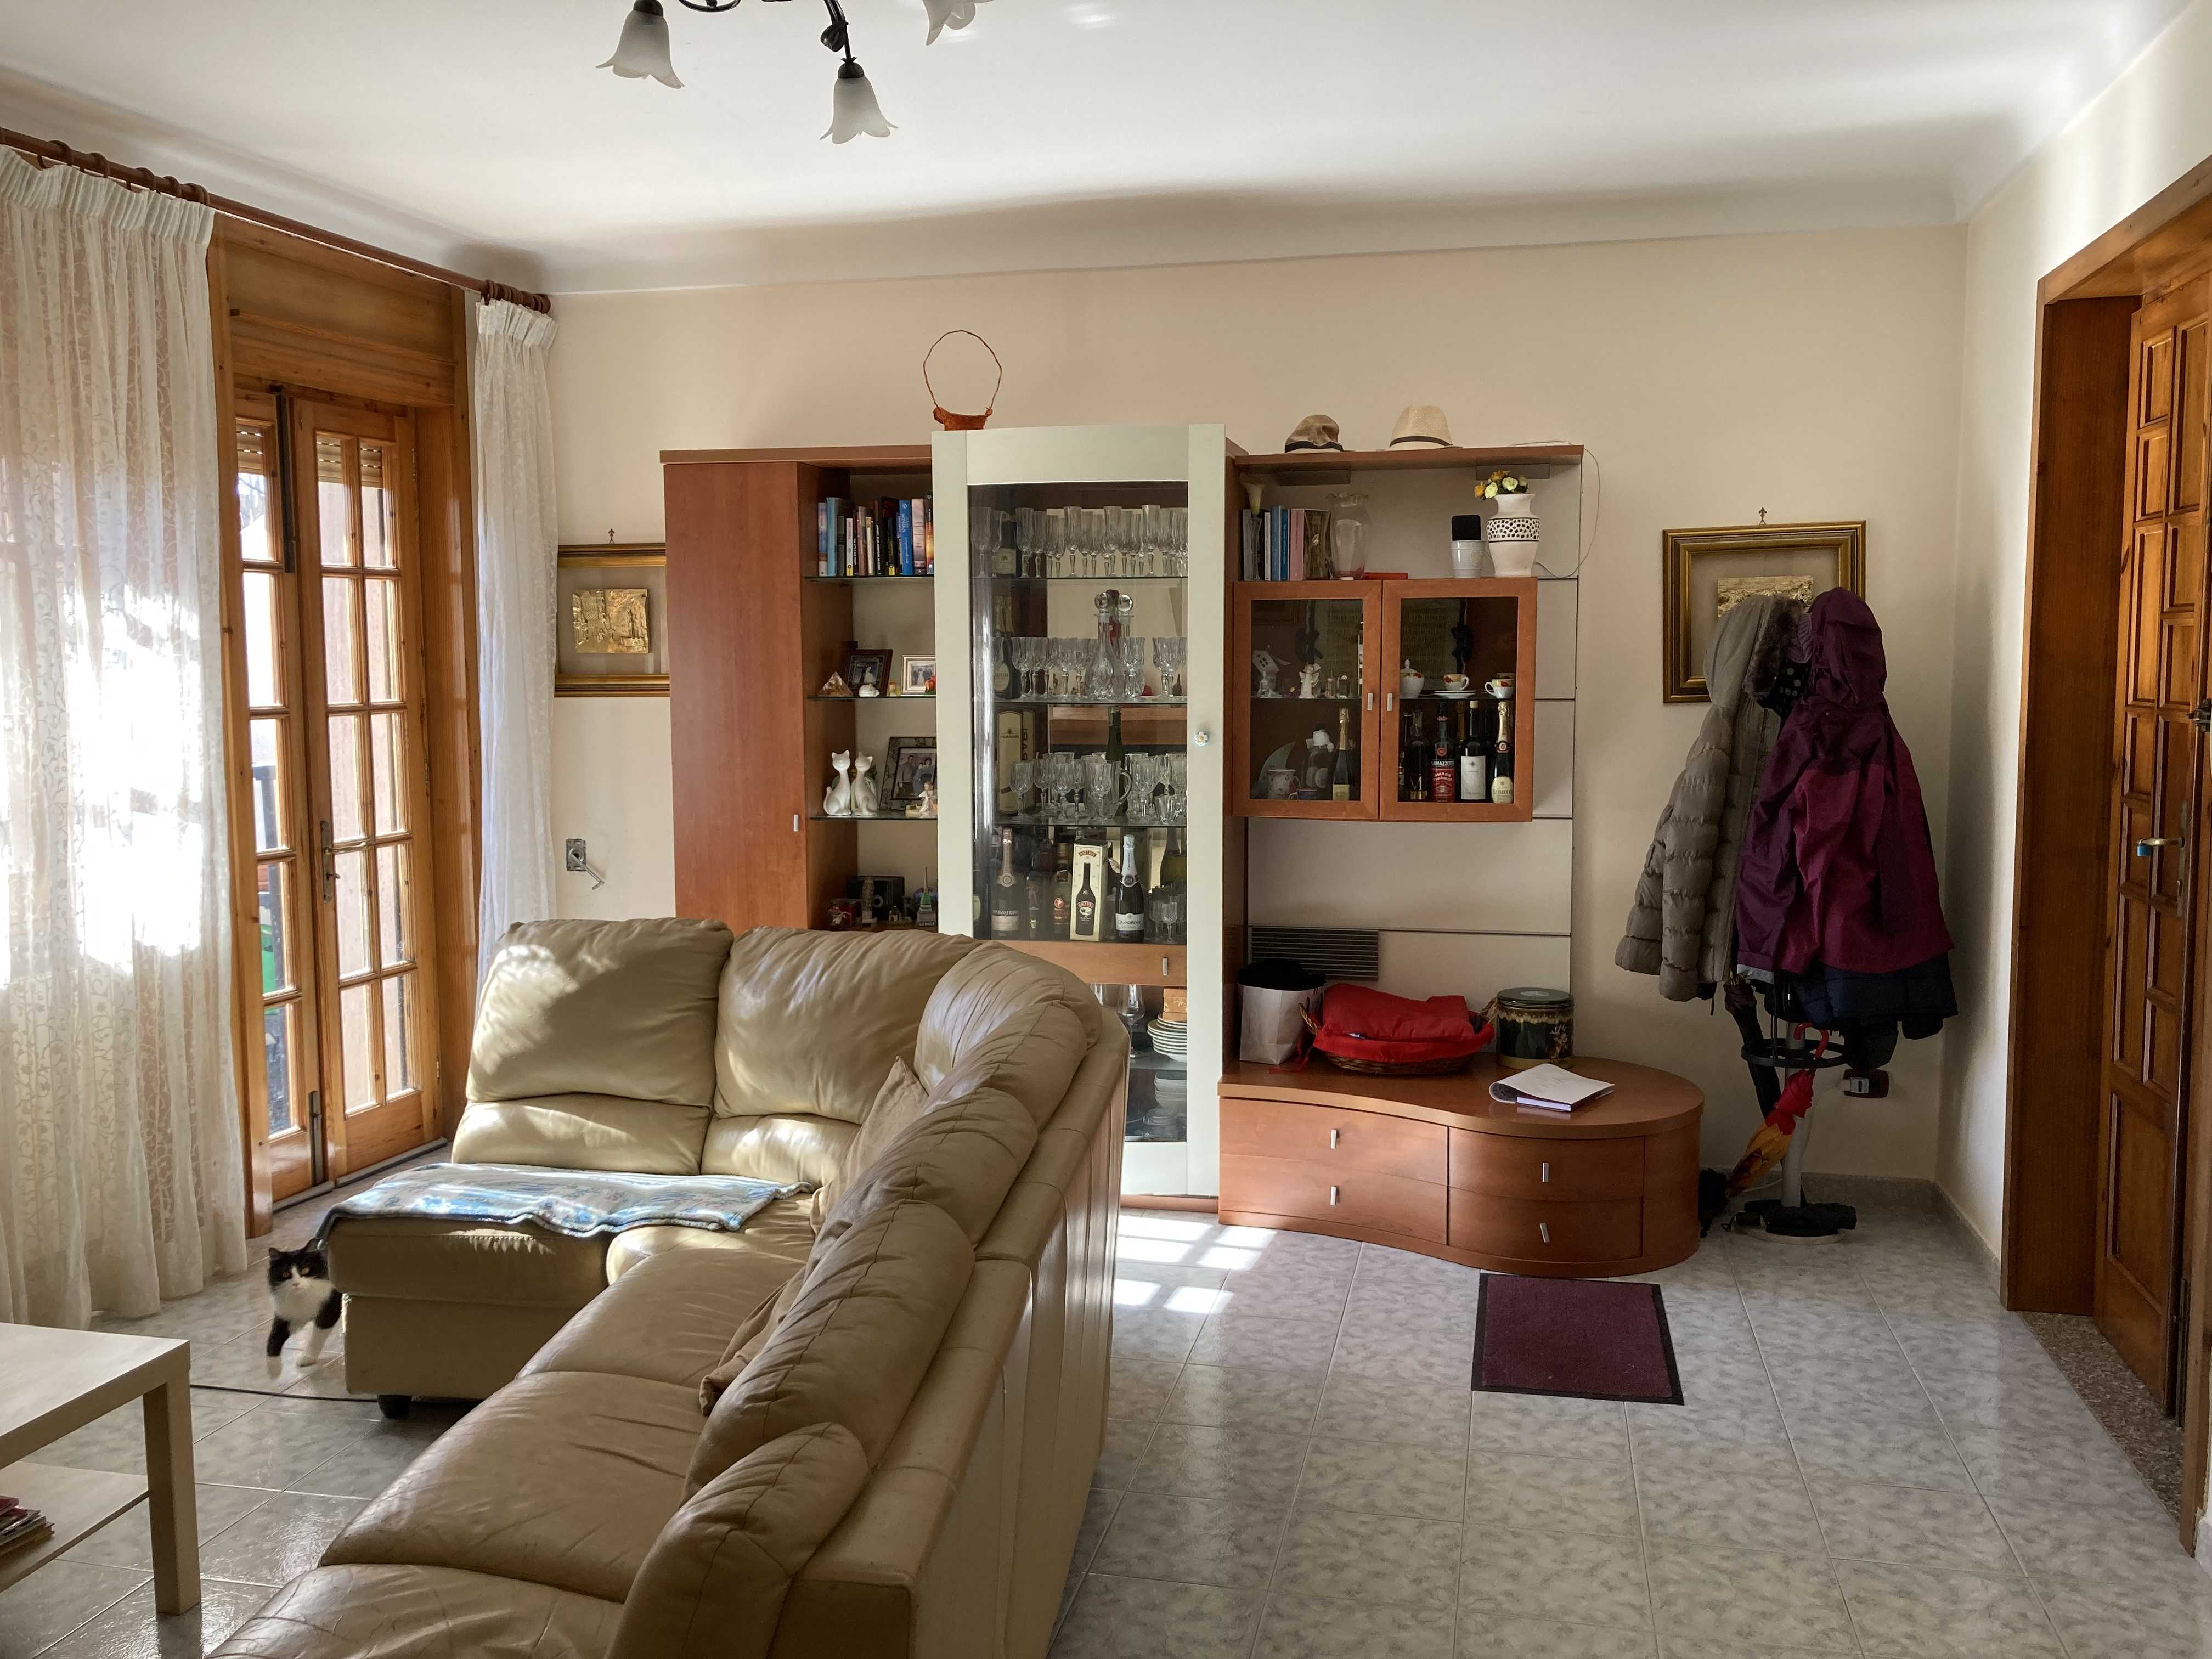 Vendite Salento: Vendita appartamento (Alessano) - soggiorno1